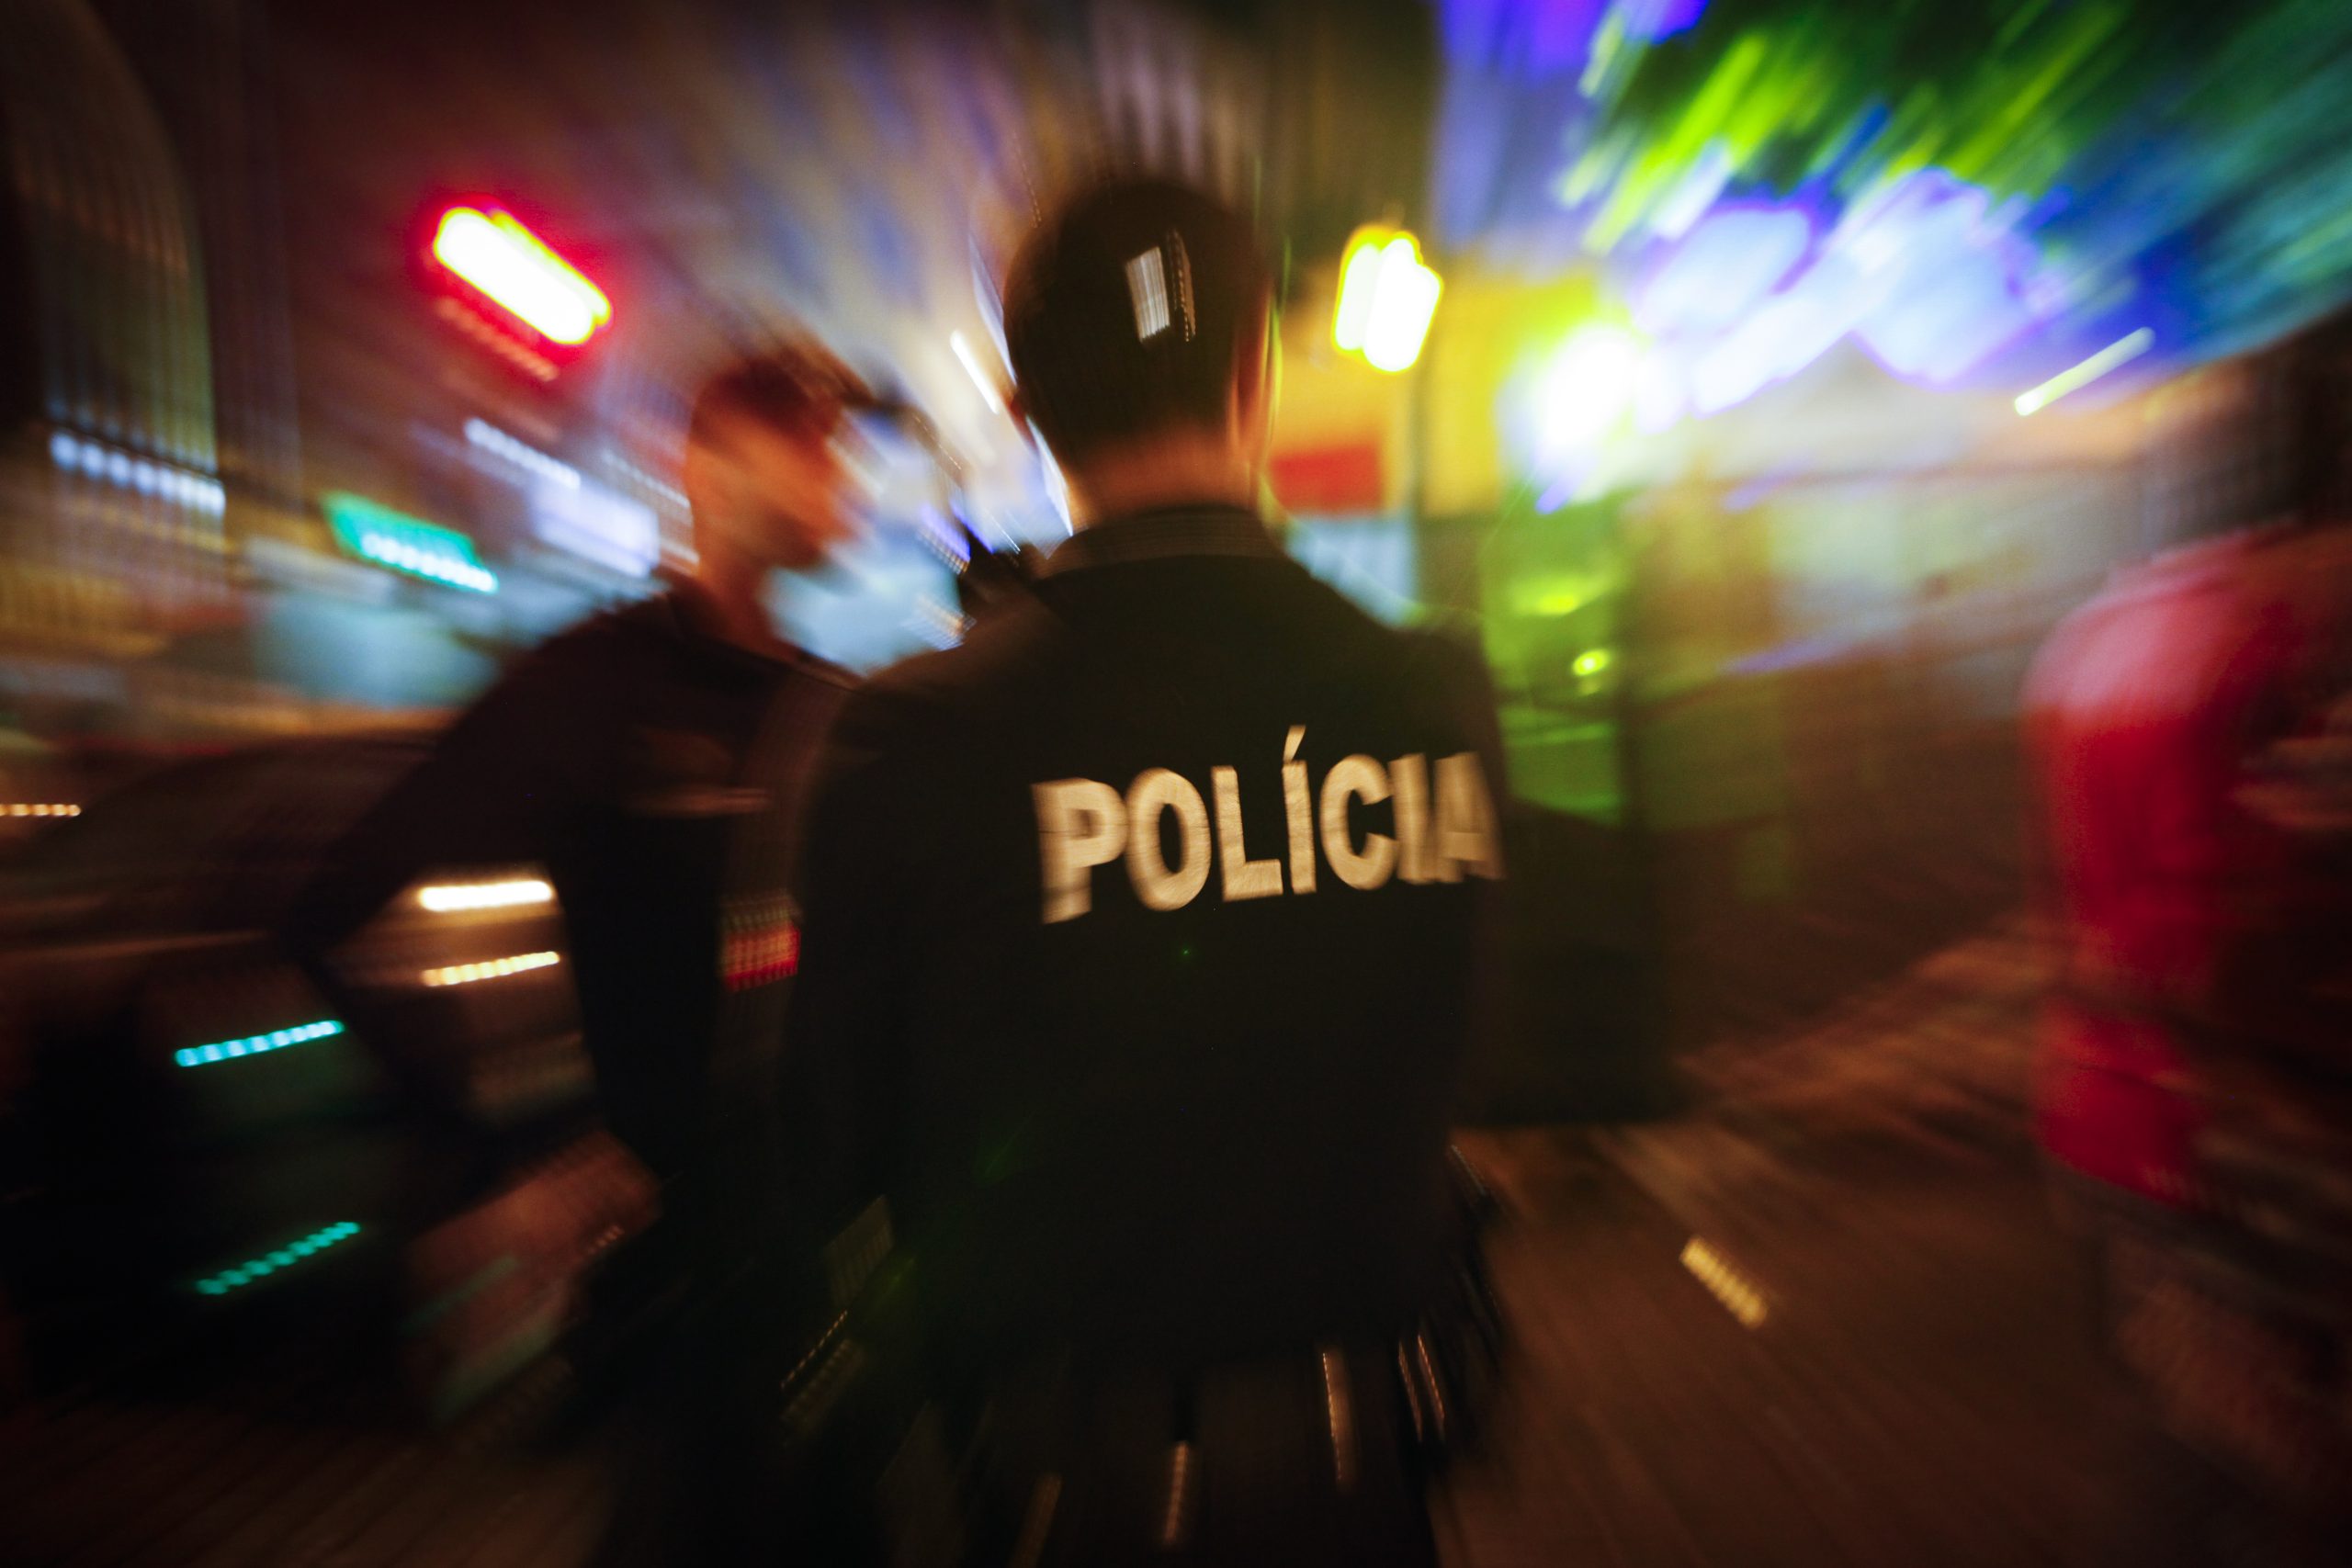 Polícia foi agredido com copo de vidro, socos e pontapés no Bairro Alto